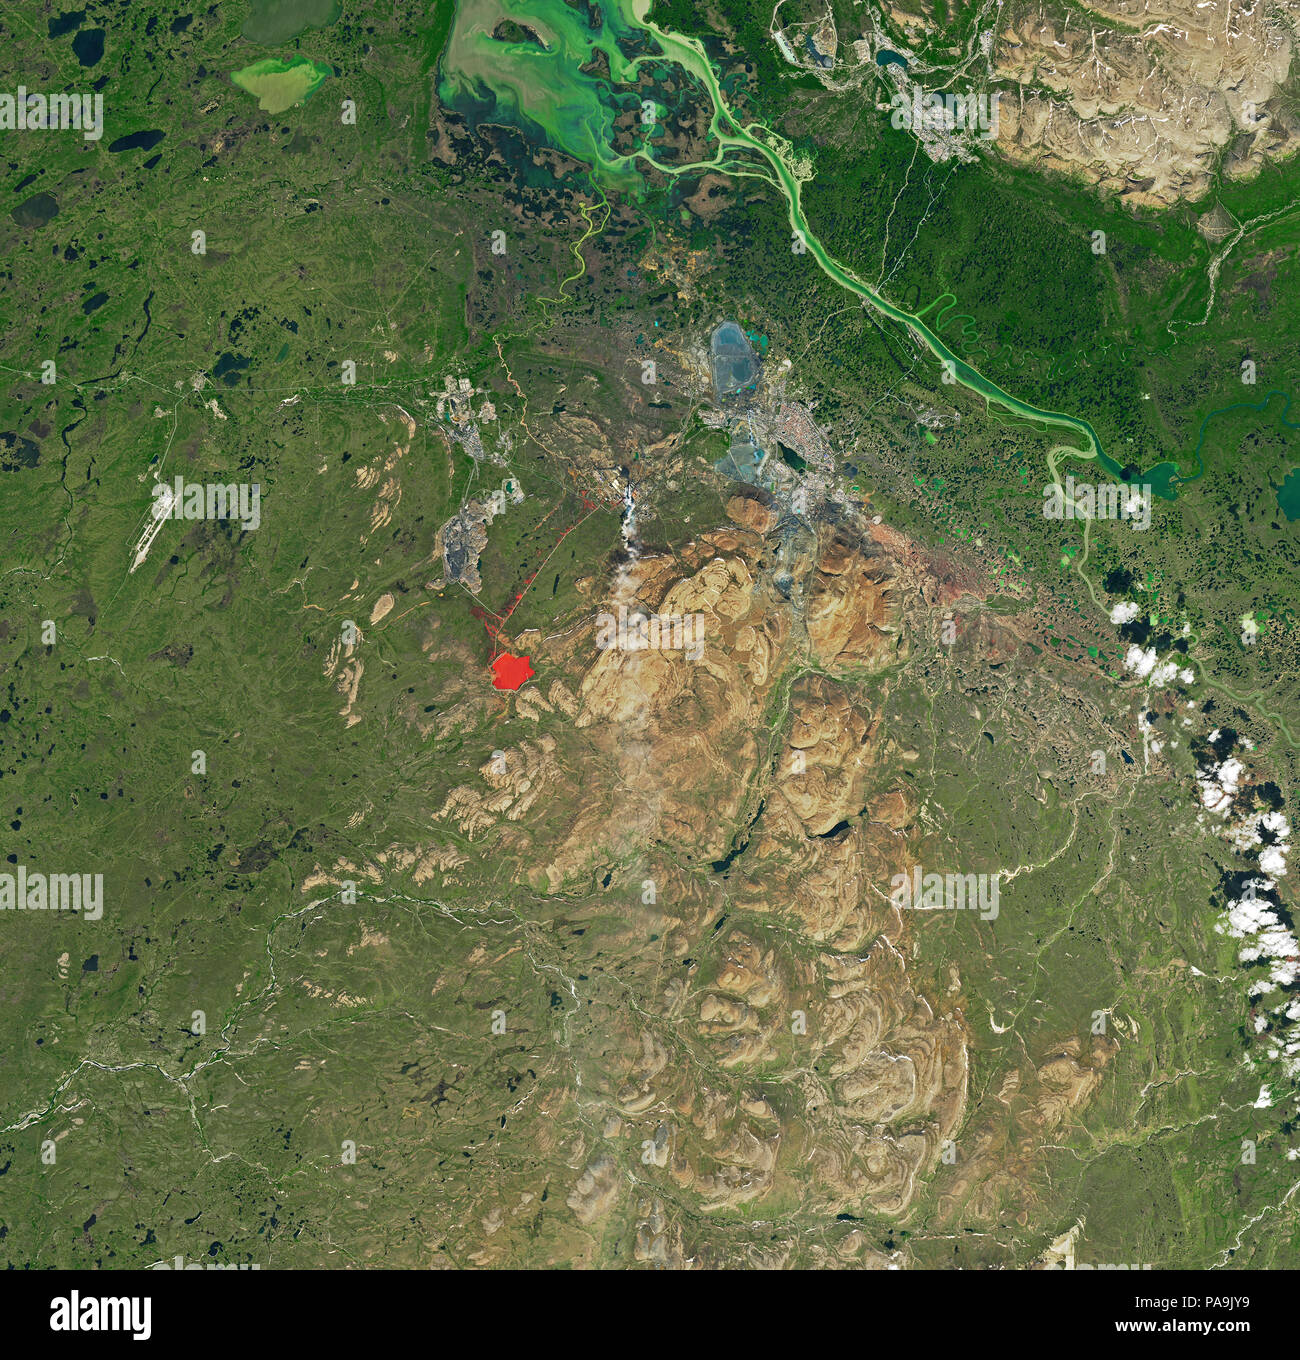 NASA-Satellitenbild von der Umweltverschmutzung durch die Industrie und Landschaft Schaden in Norilsk, Russland rot Bergeteich sichtbar und braun gezeichnete Land vom 12. Juli 2017 Stockfoto